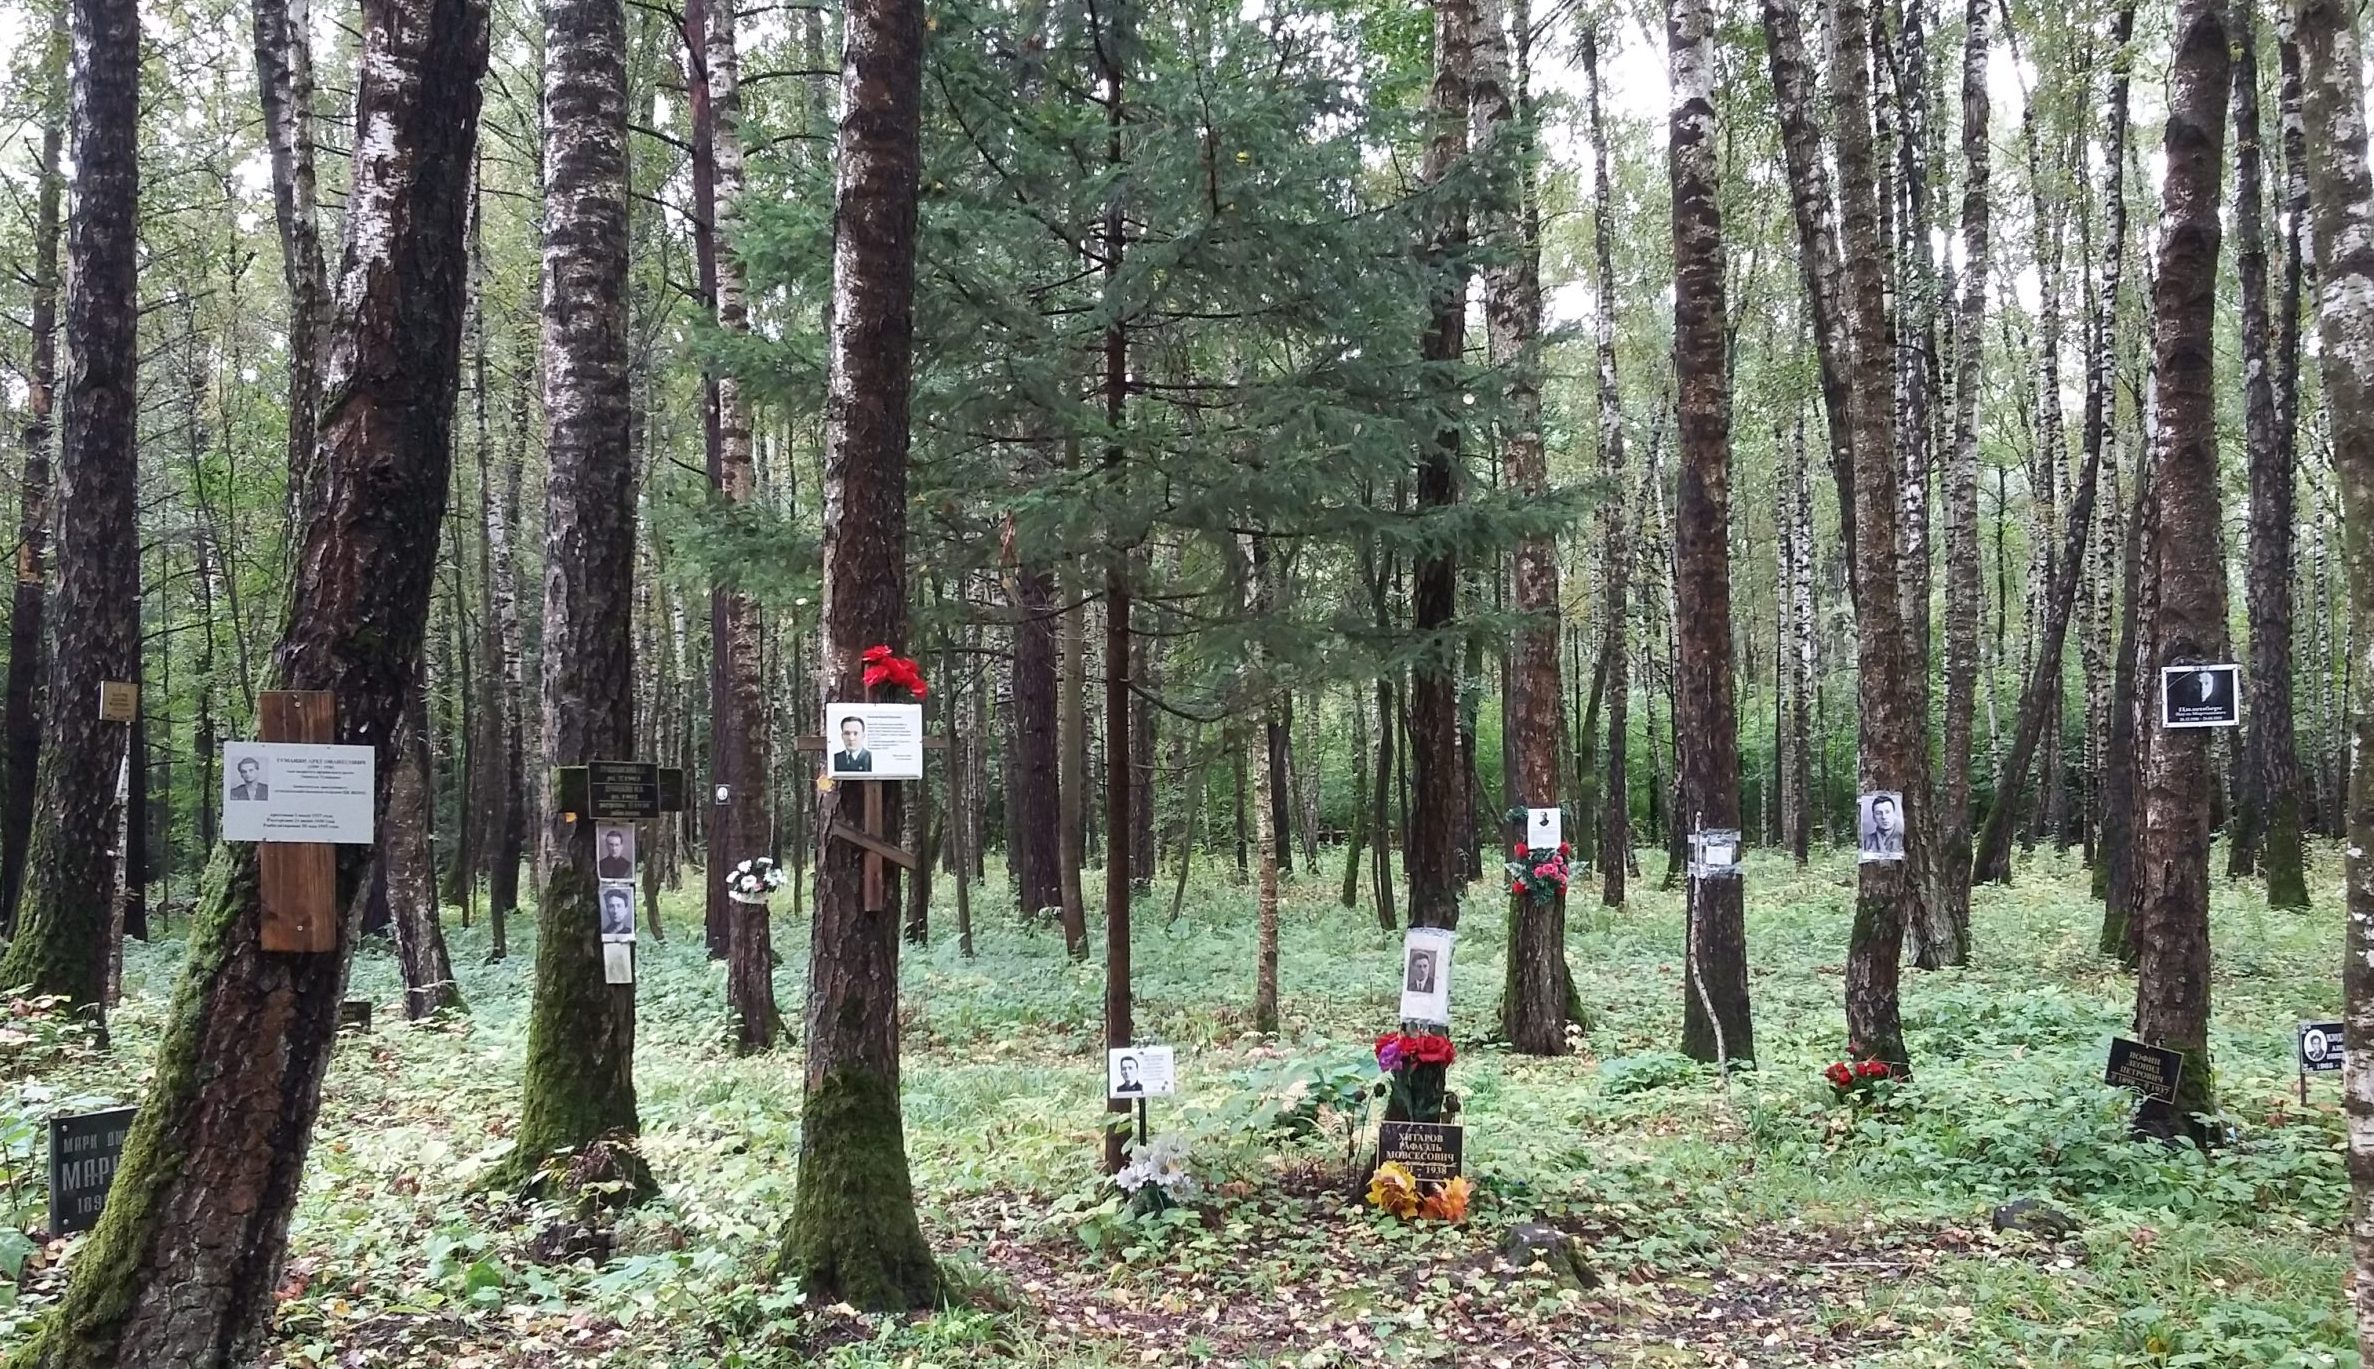 På trädstammar i en skog har skyltar med porträtt av människor satts upp.